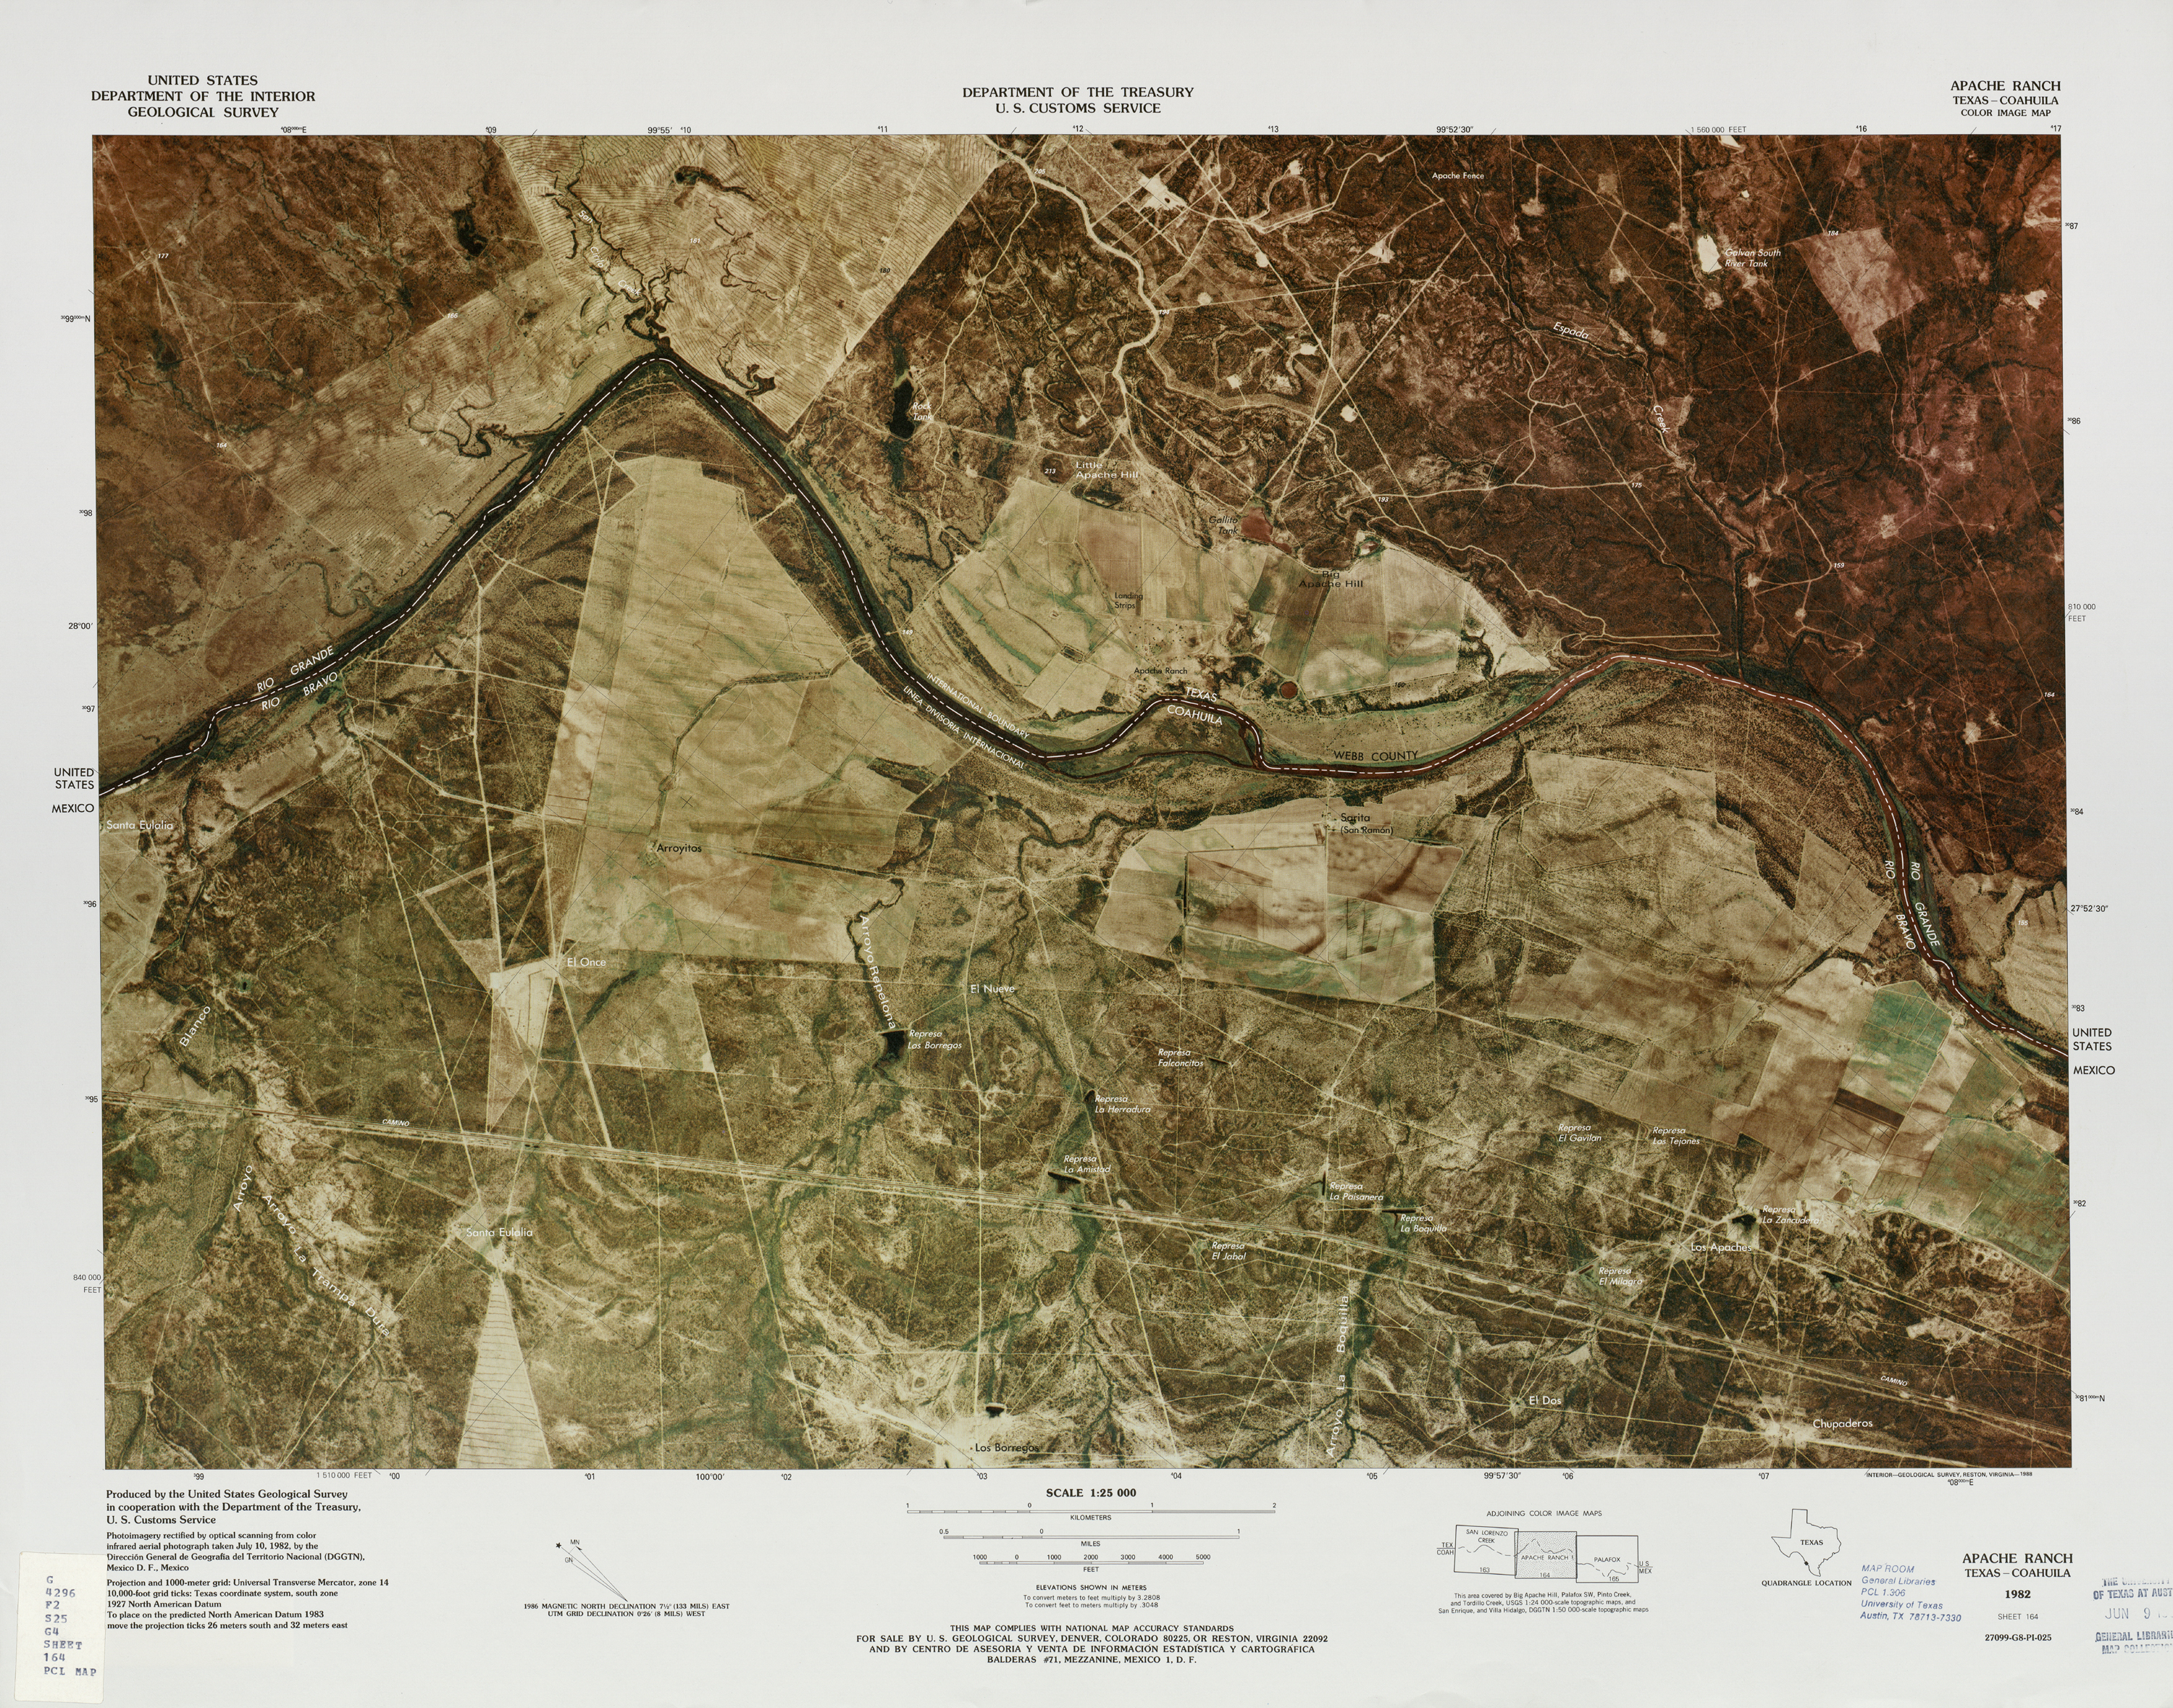 Mapa Fronterizo de México-Estados Unidos, Apache Ranch 1982